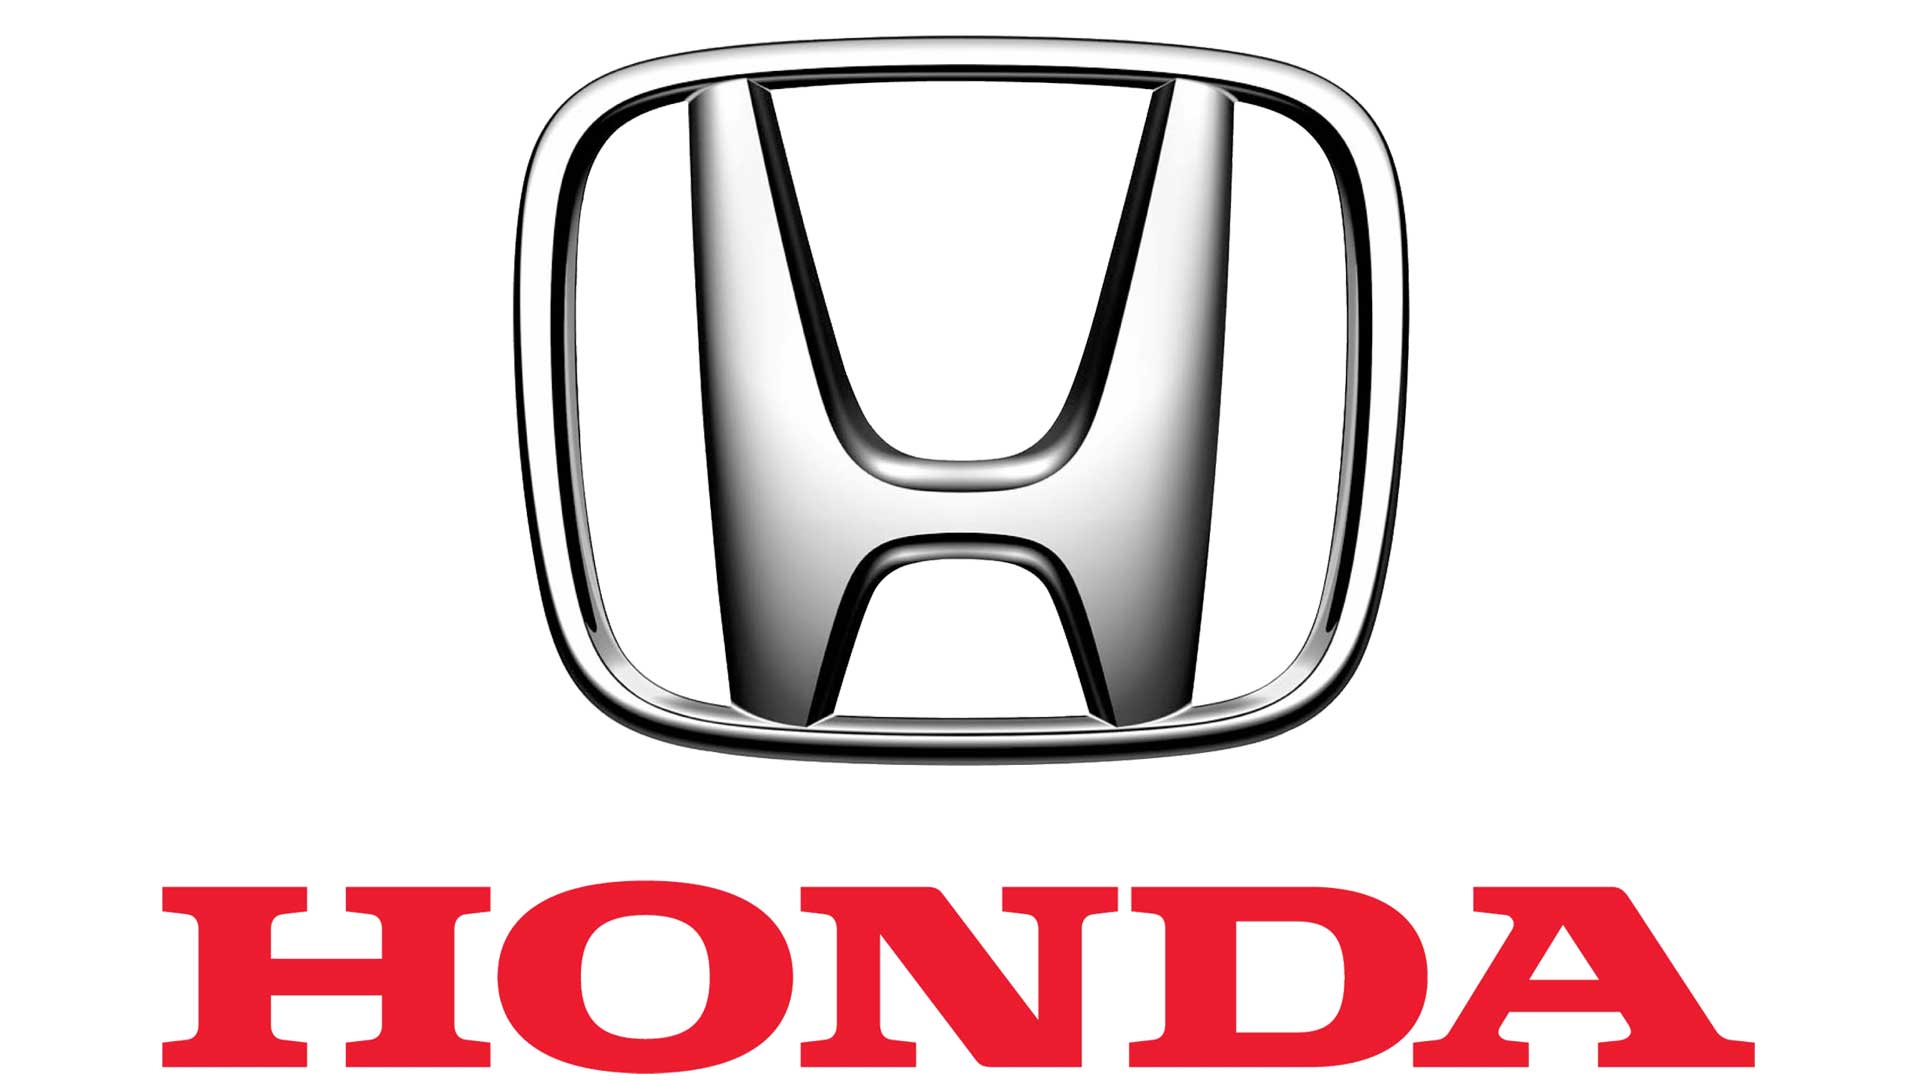 Honda-logo-1920x1080.jpg